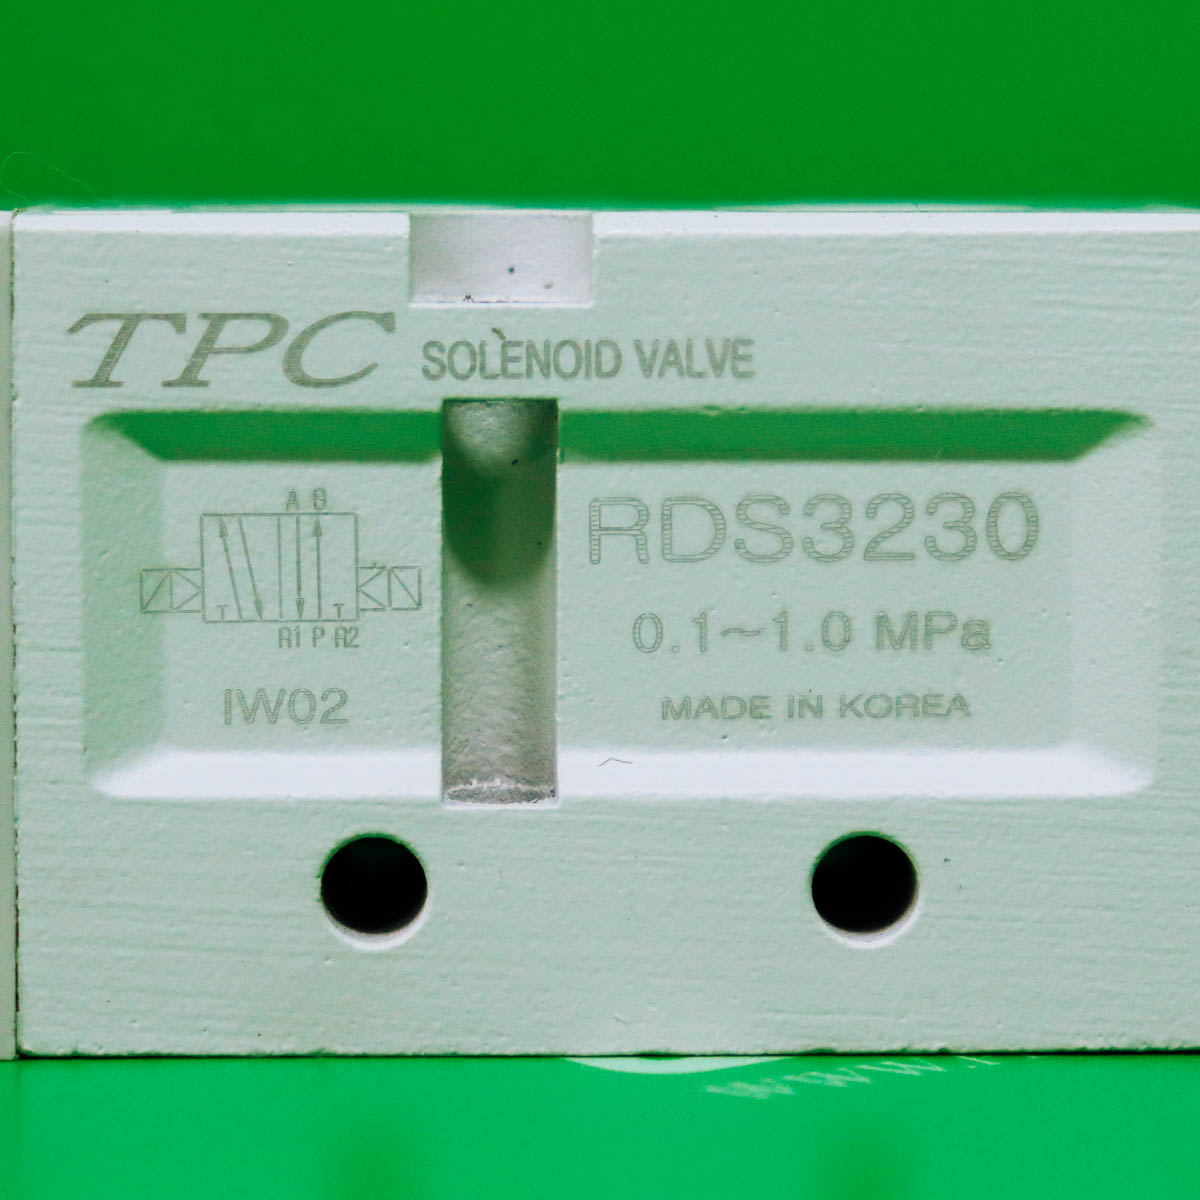 [중고] RDS3230-5G-02 TPC 탄성체 Seal 3포트 Pilot형 솔레노이드 밸브